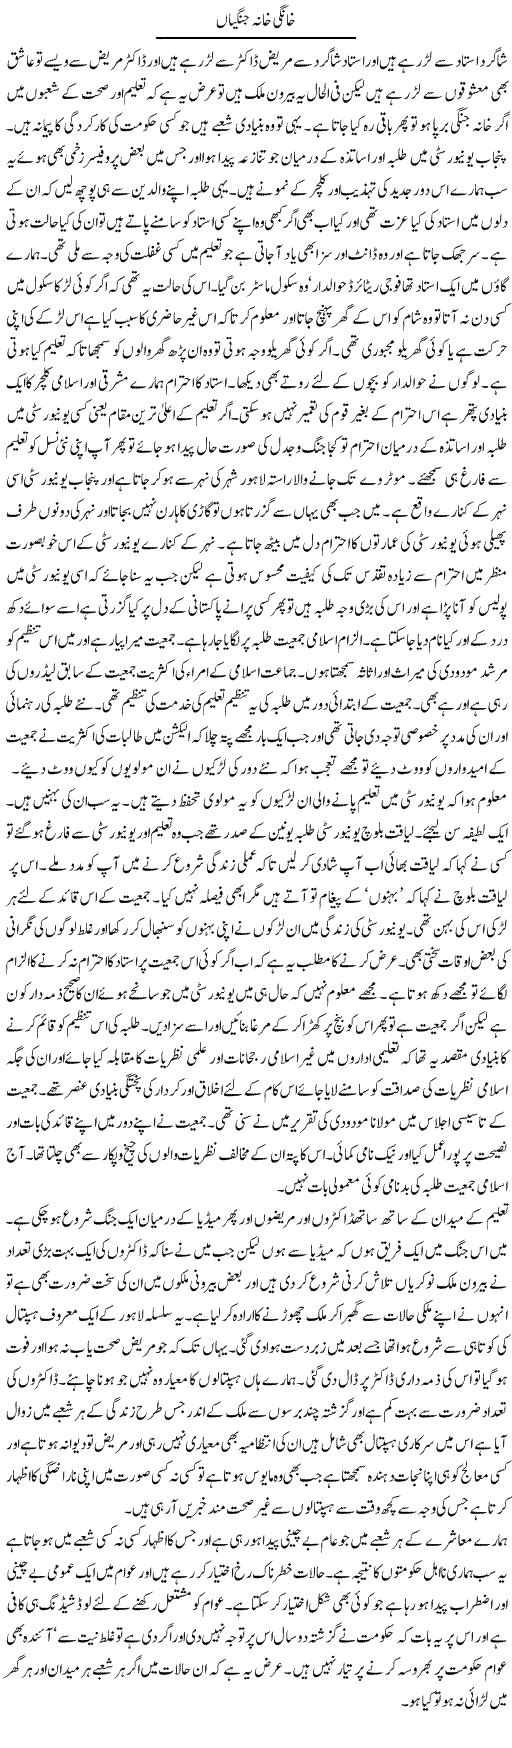 Khana Jangian Express Column Abdul Qadir Hasan 6 April 2010